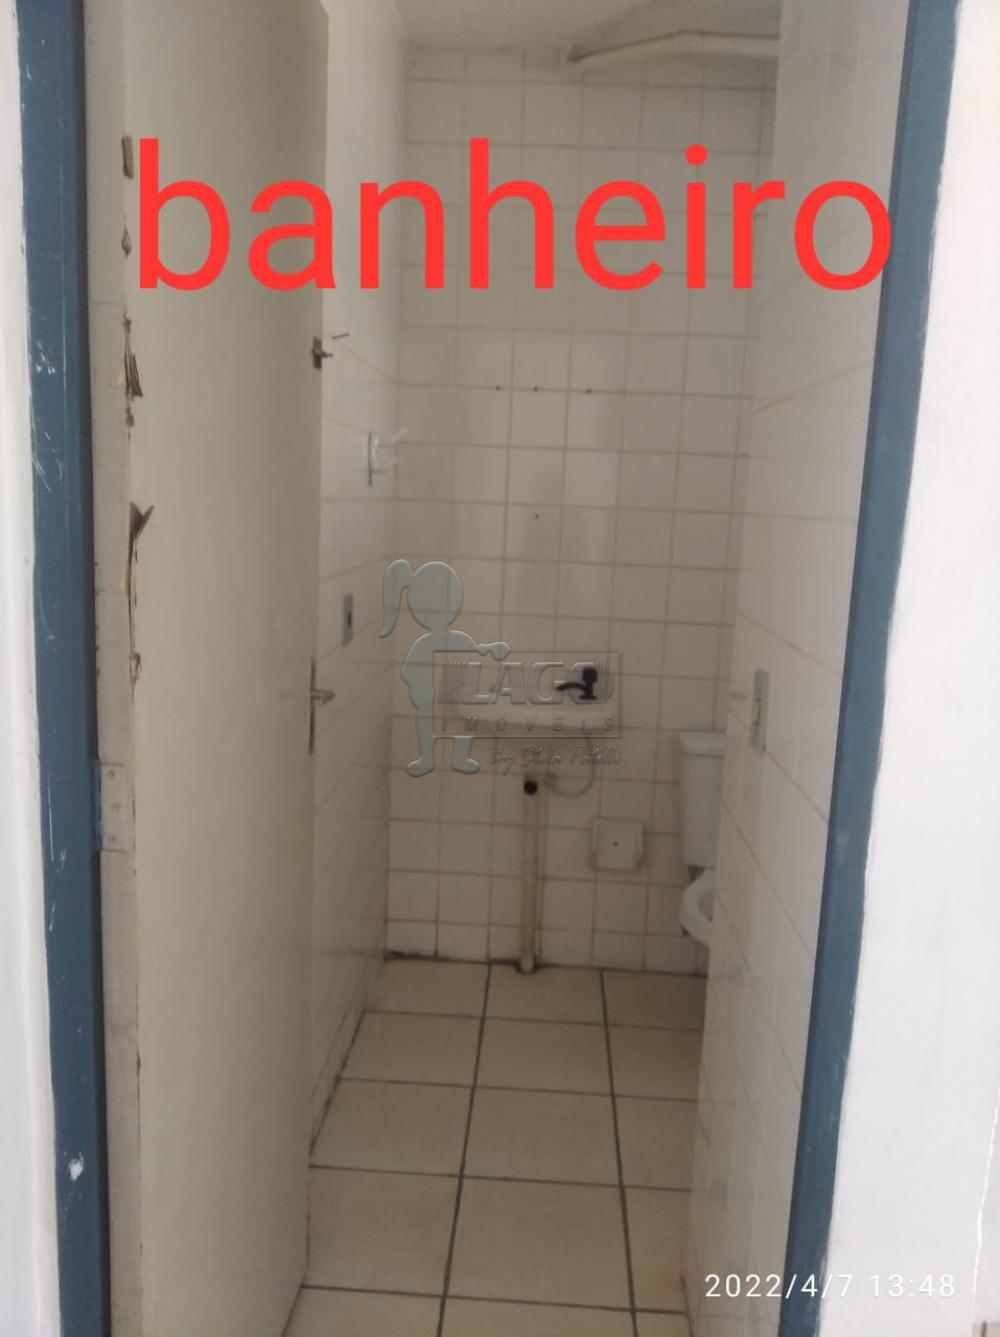 Comprar Apartamento / Padrão em Ribeirão Preto R$ 120.000,00 - Foto 4